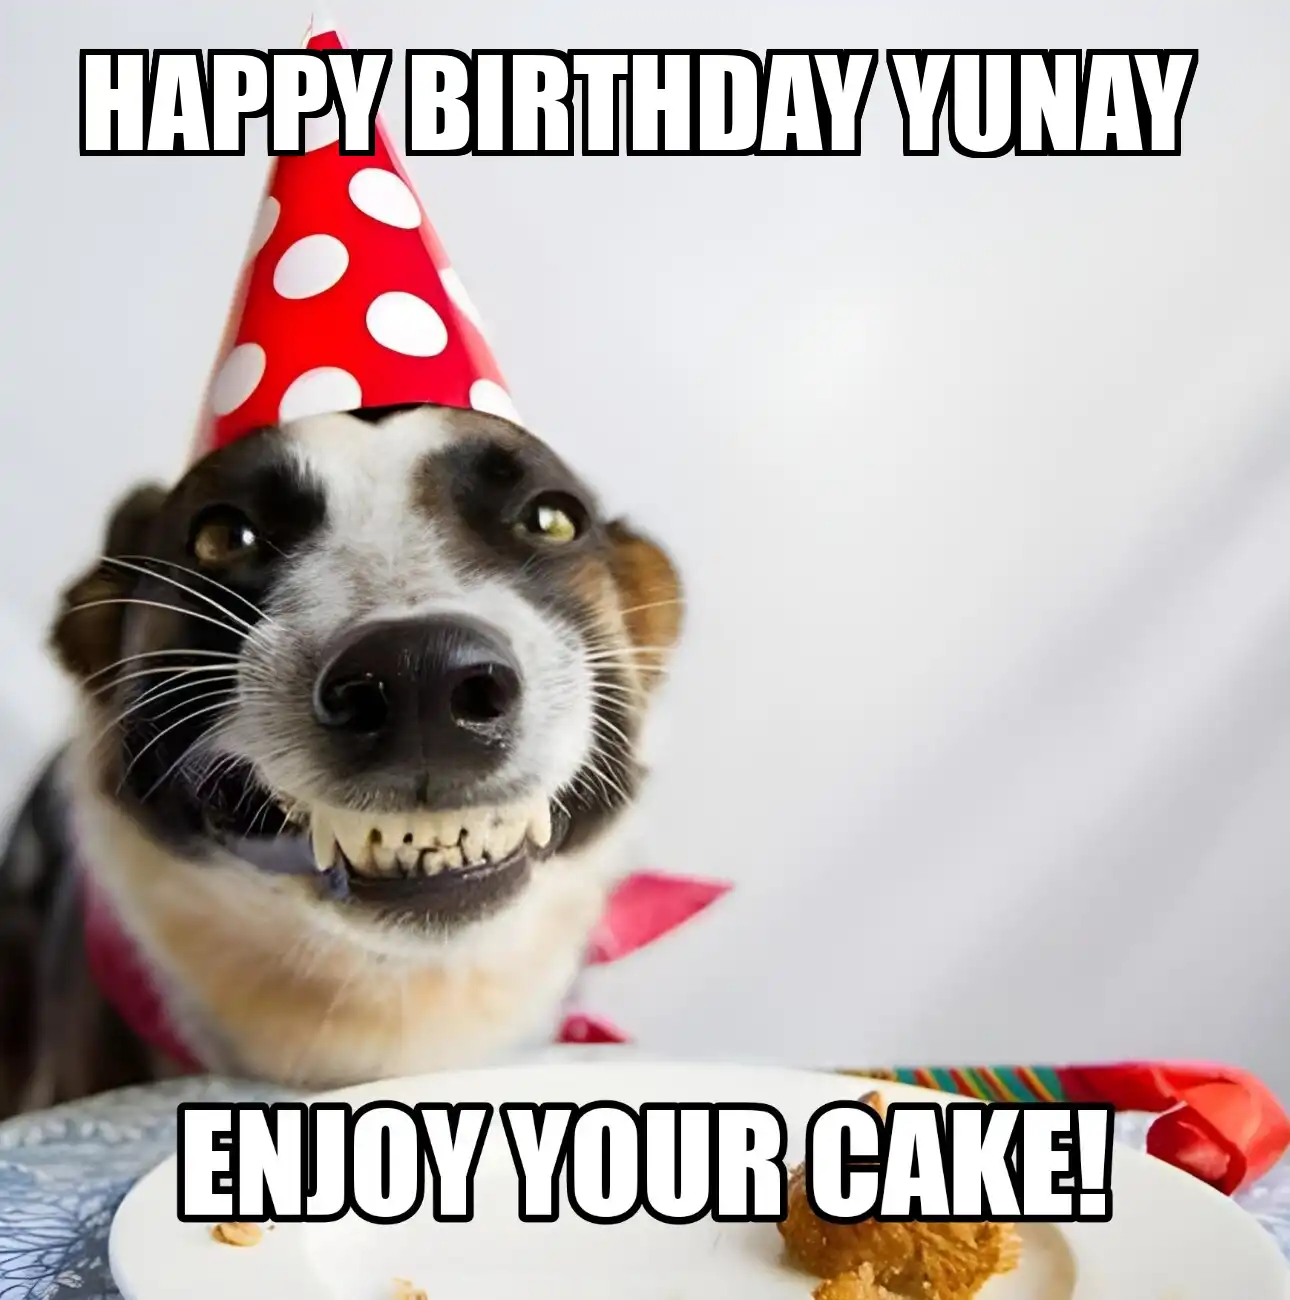 Happy Birthday Yunay Enjoy Your Cake Dog Meme